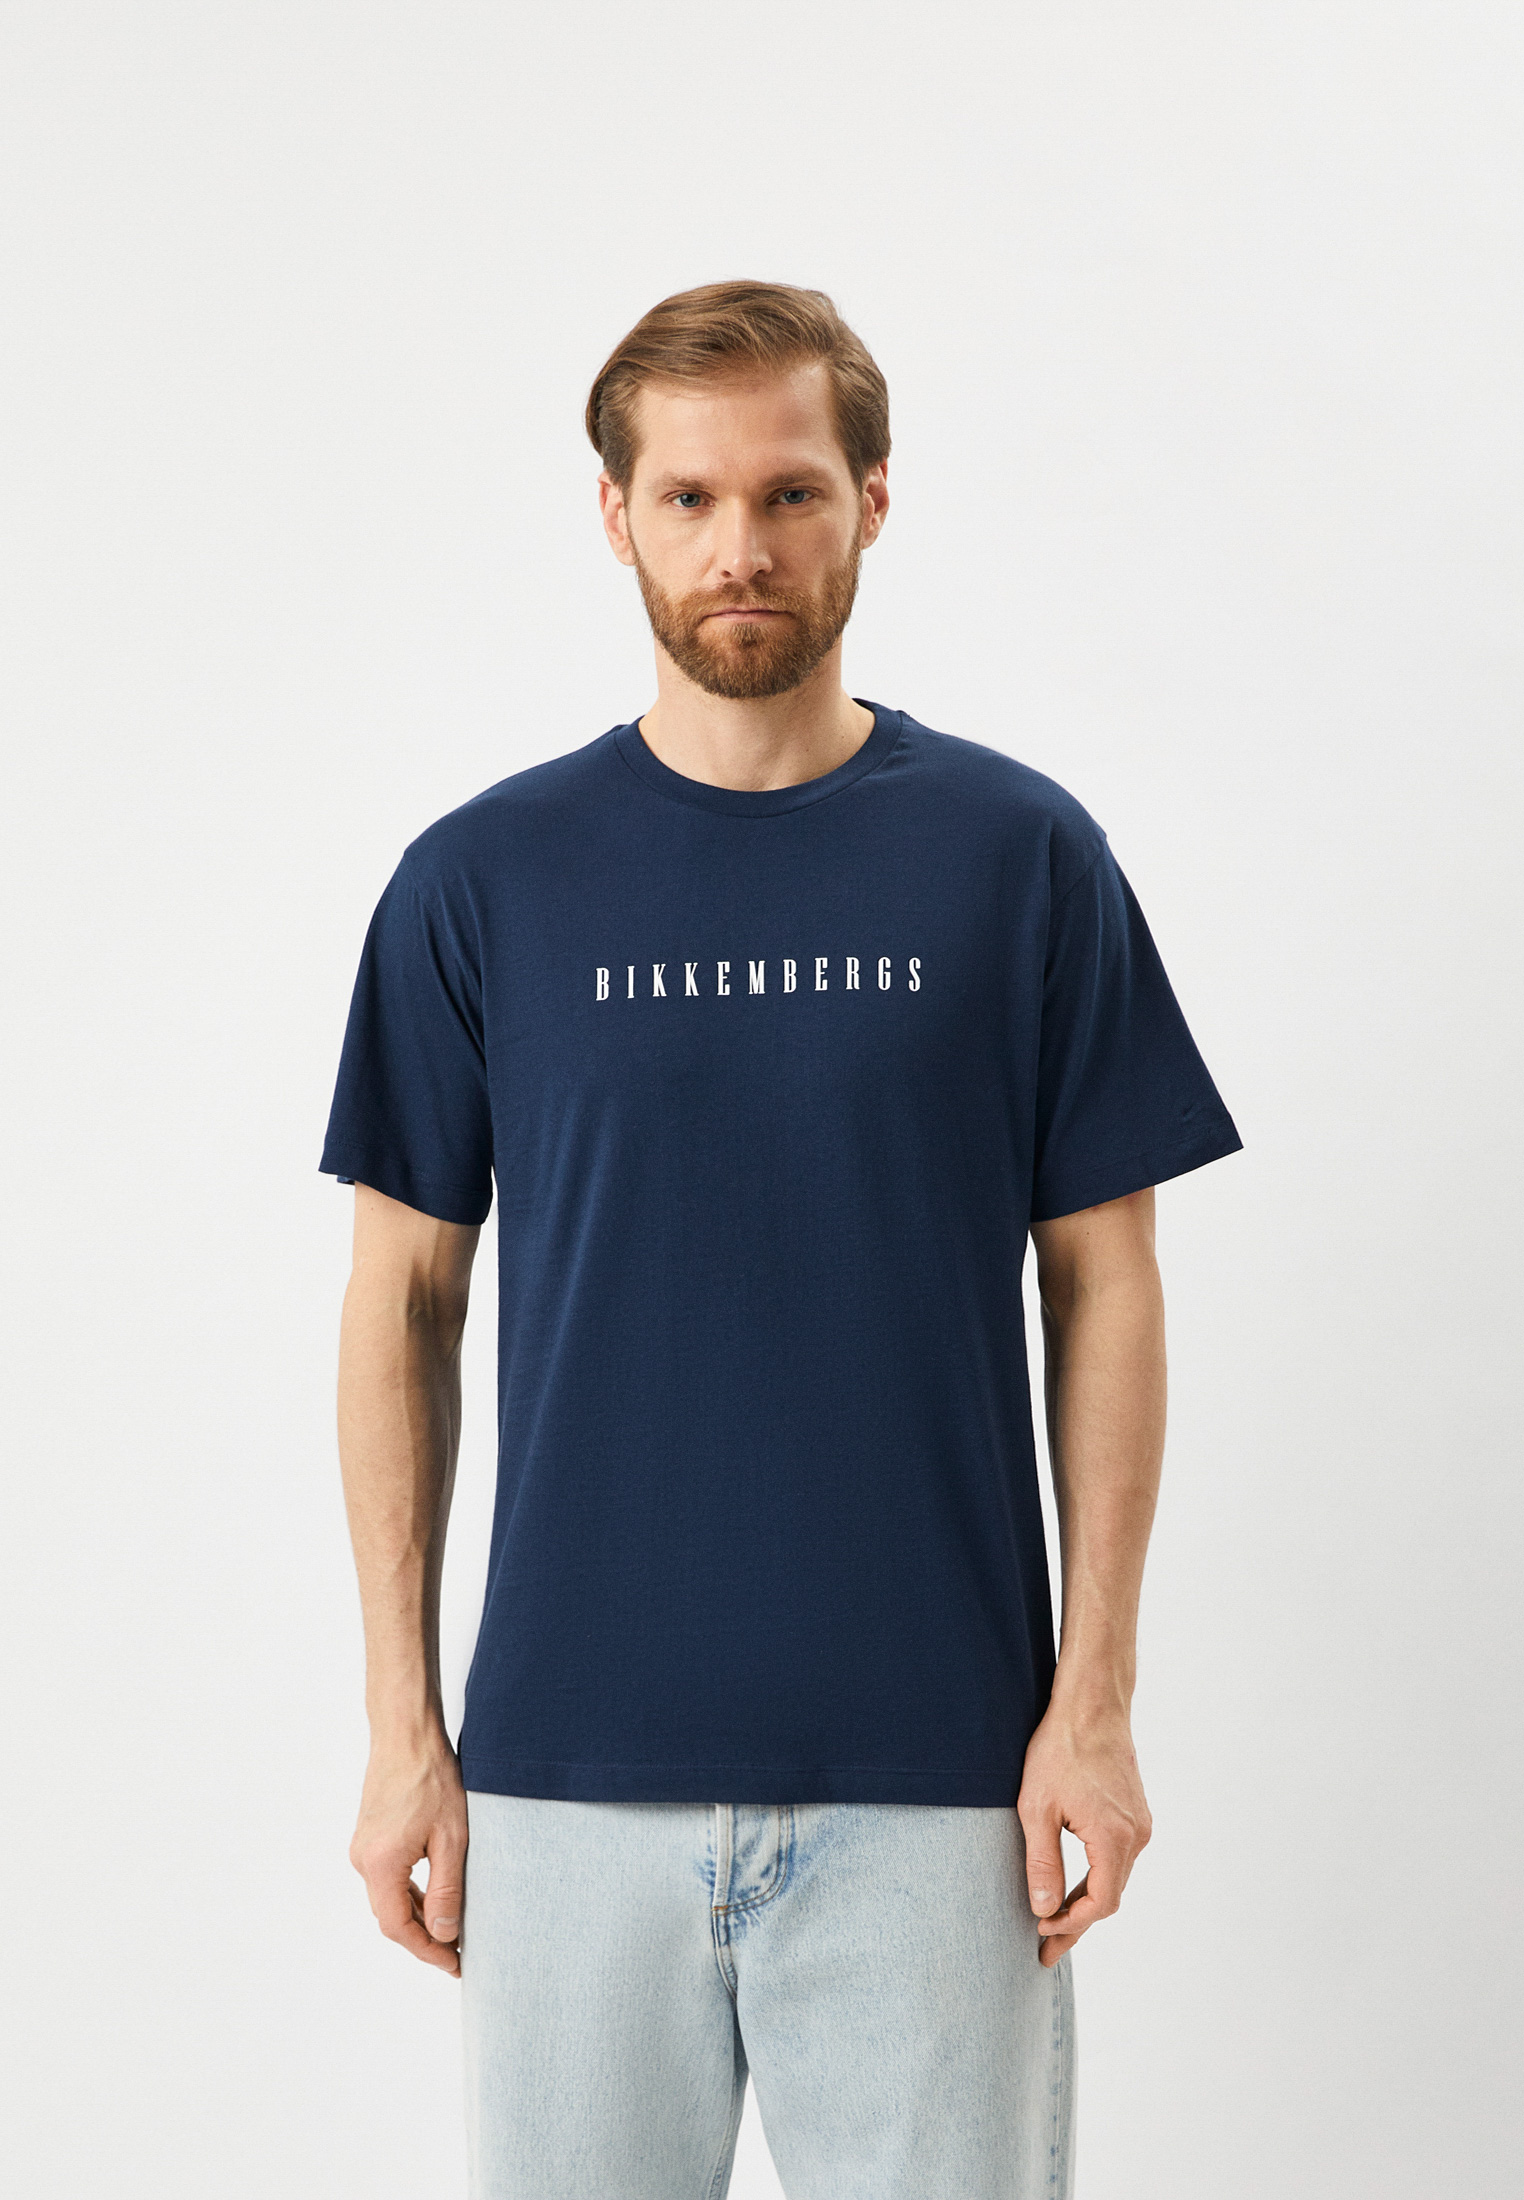 Мужская футболка Bikkembergs (Биккембергс) C 4 114 25 M 4349: изображение 1